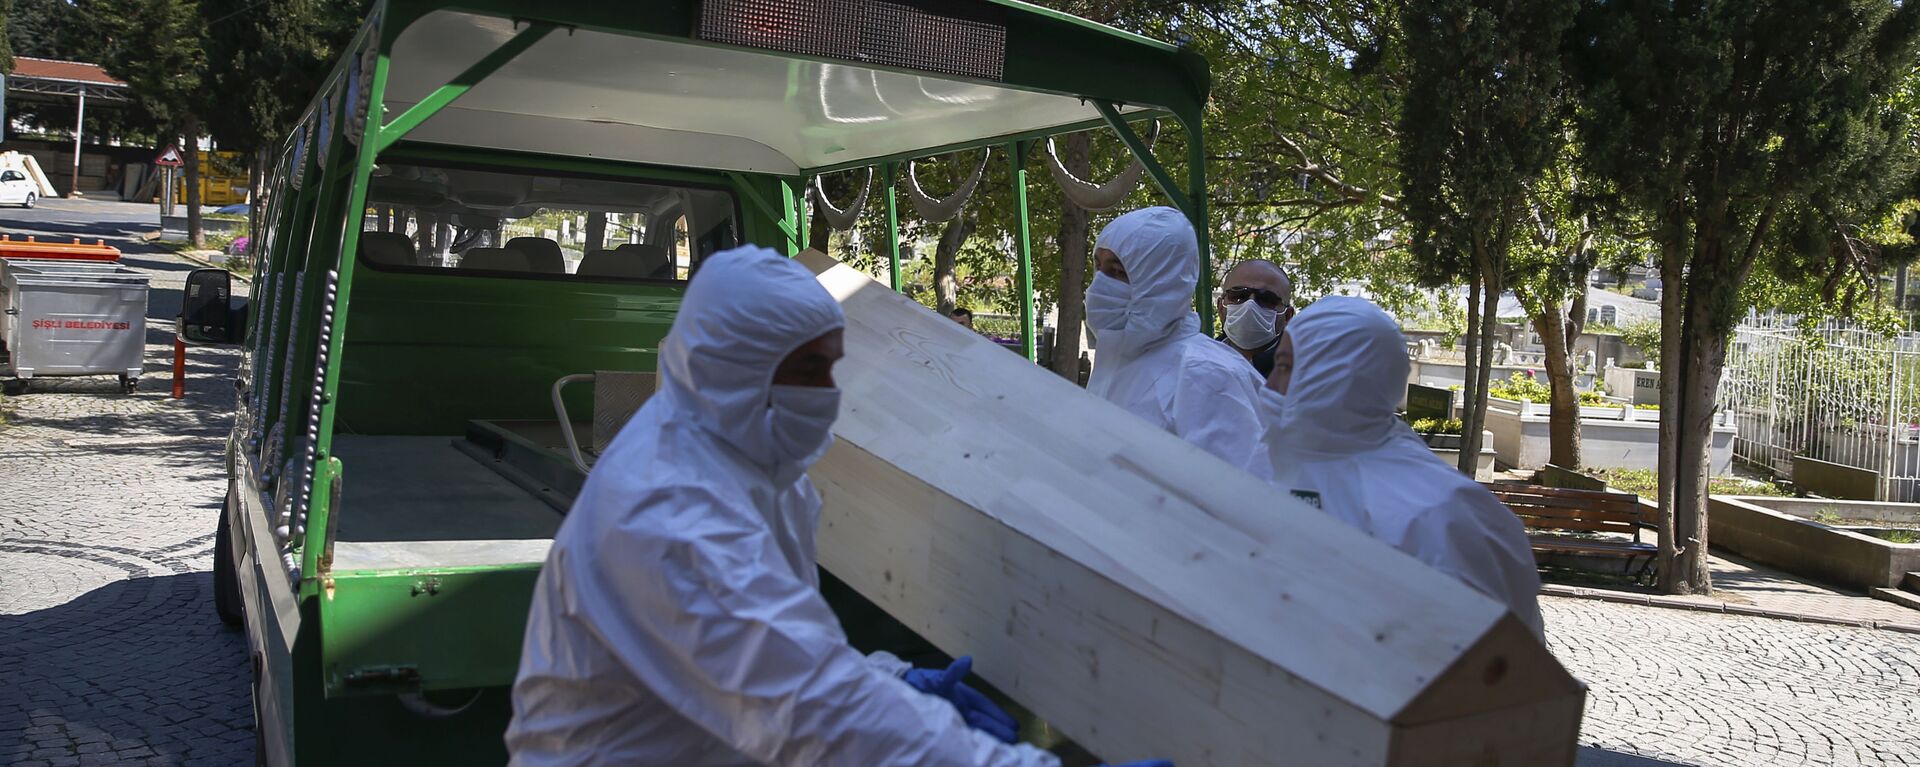 Работники морга погружают гроб с погибшим от коронавируса, архивное фото - Sputnik Тоҷикистон, 1920, 16.06.2021